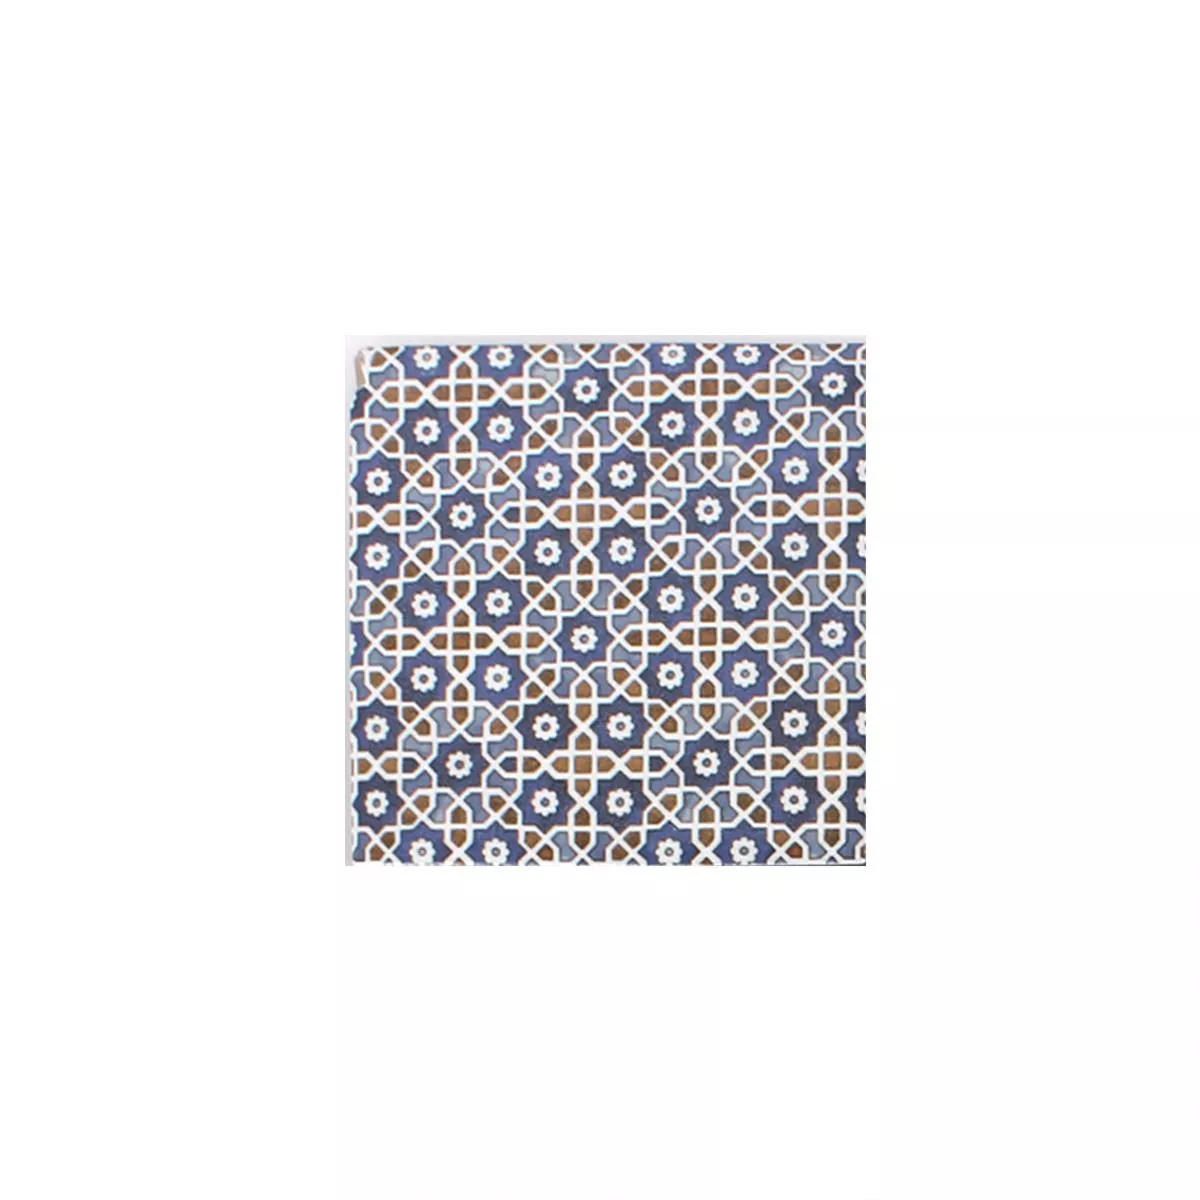 Vzorek Keramika Mozaiková Dlaždice Daymion Retro Vzhled Modrá Hnědá 